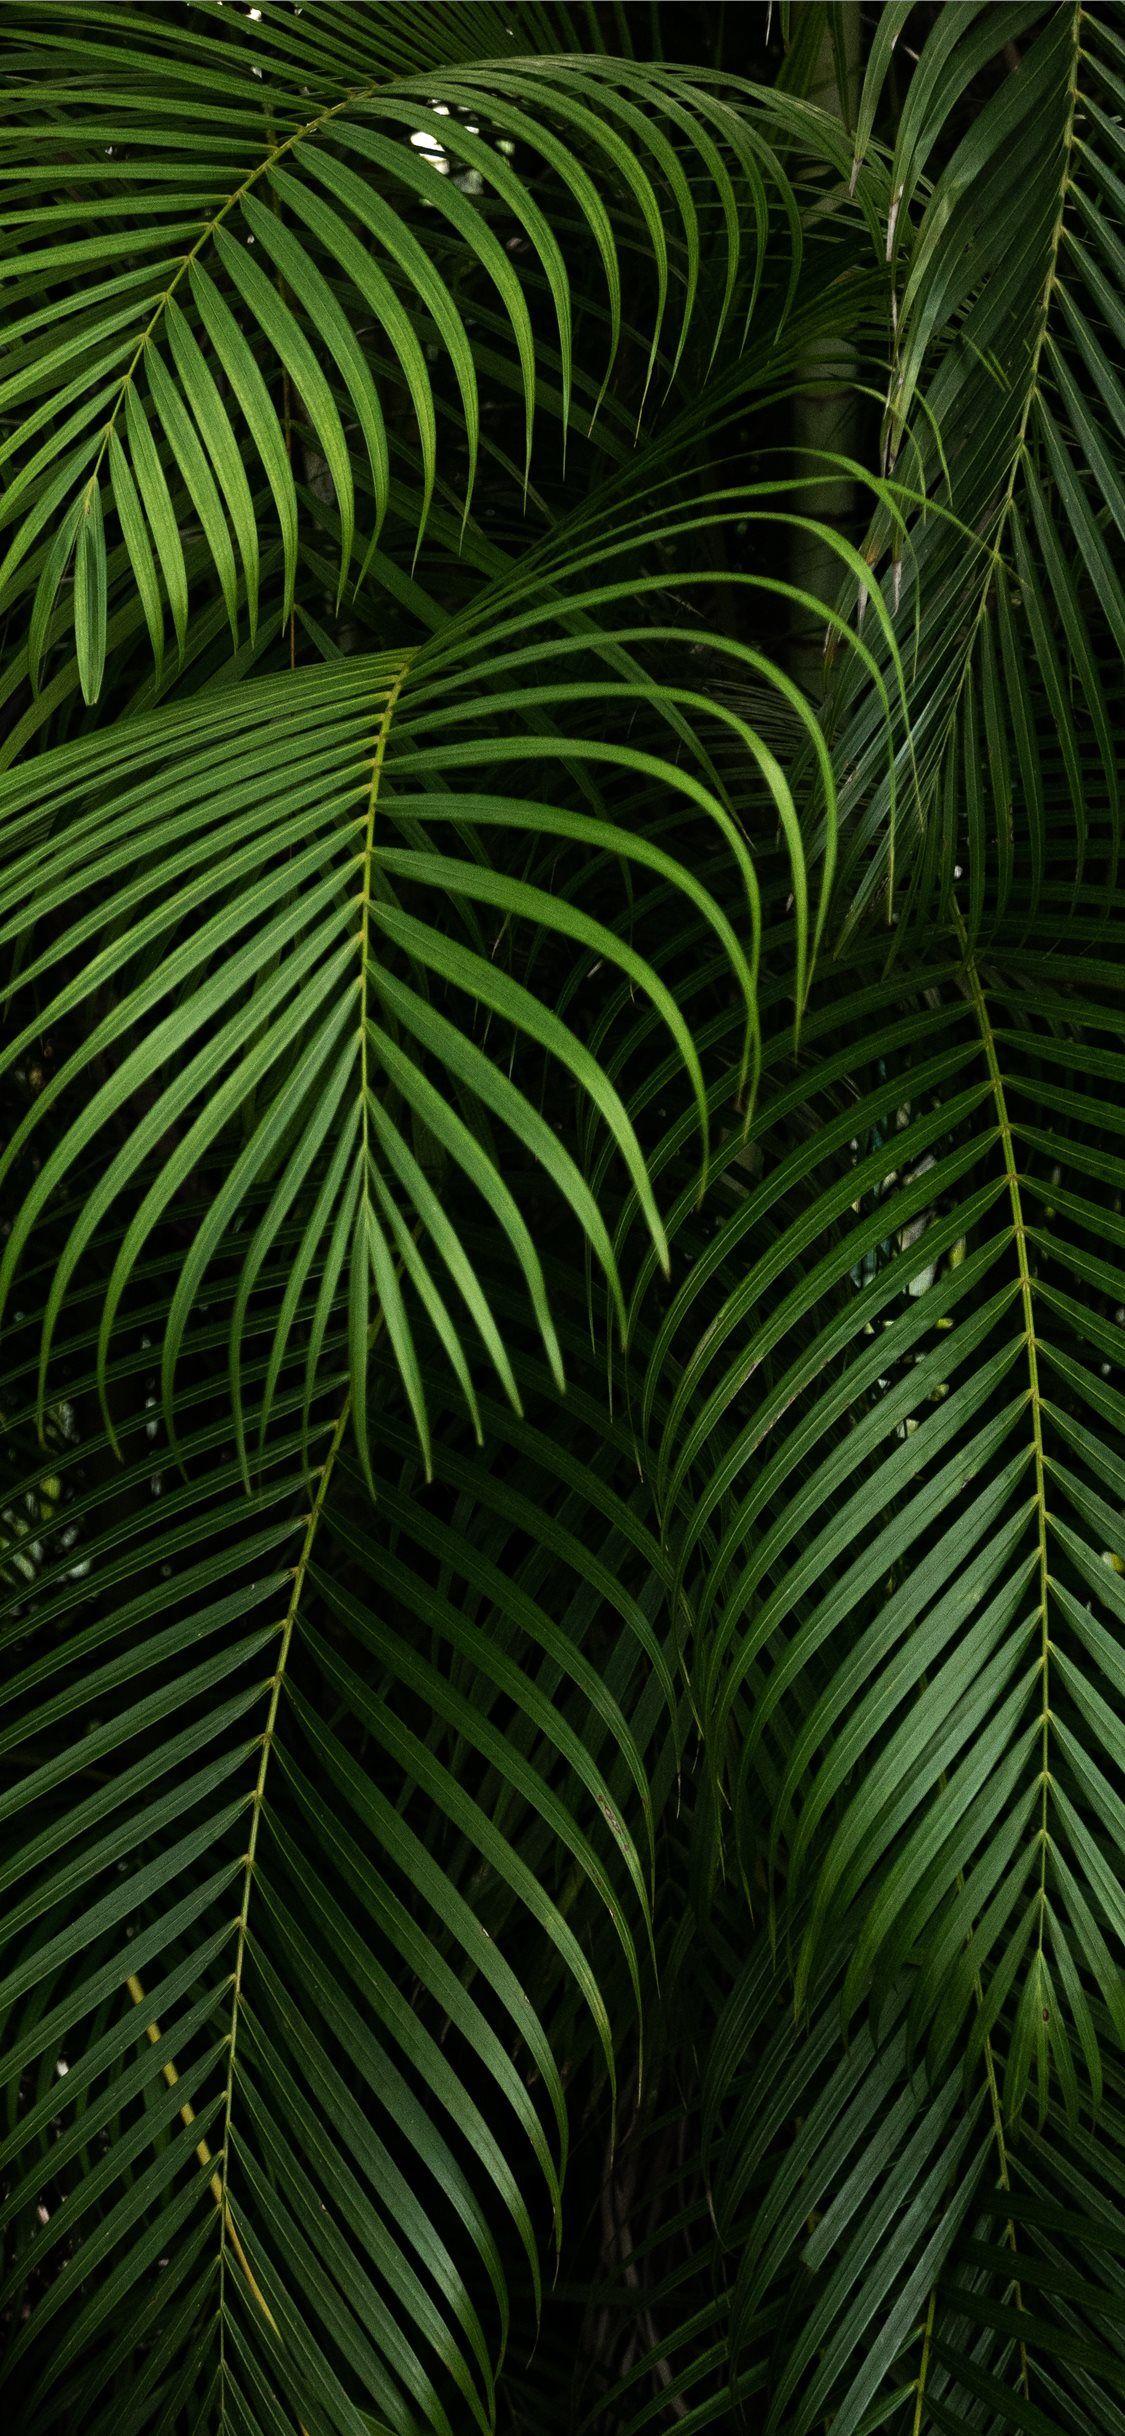 1125x2436 của Hector Falcon Fairchild Vườn bách thảo nhiệt đới iPhone X